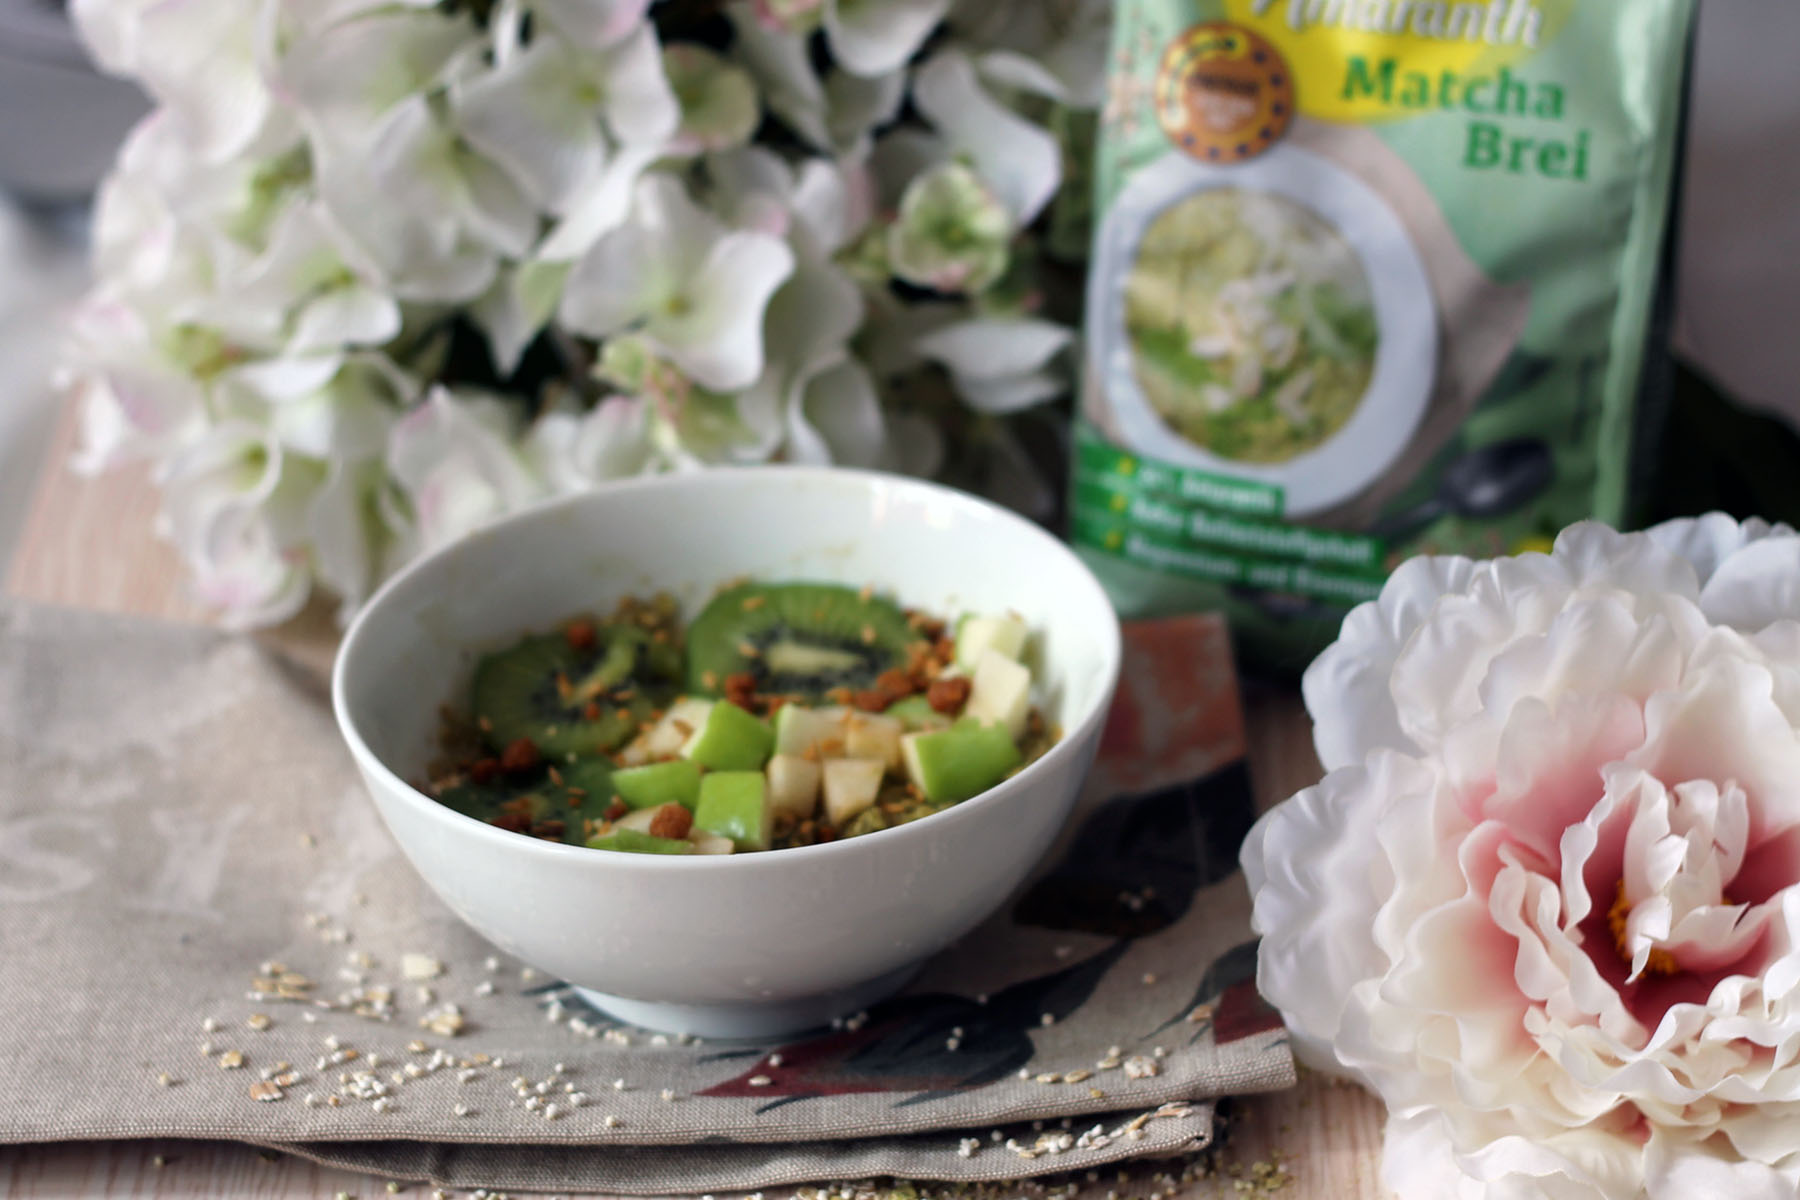 matcha-brei-müsli-frühstück-rezept-idee-foodblog